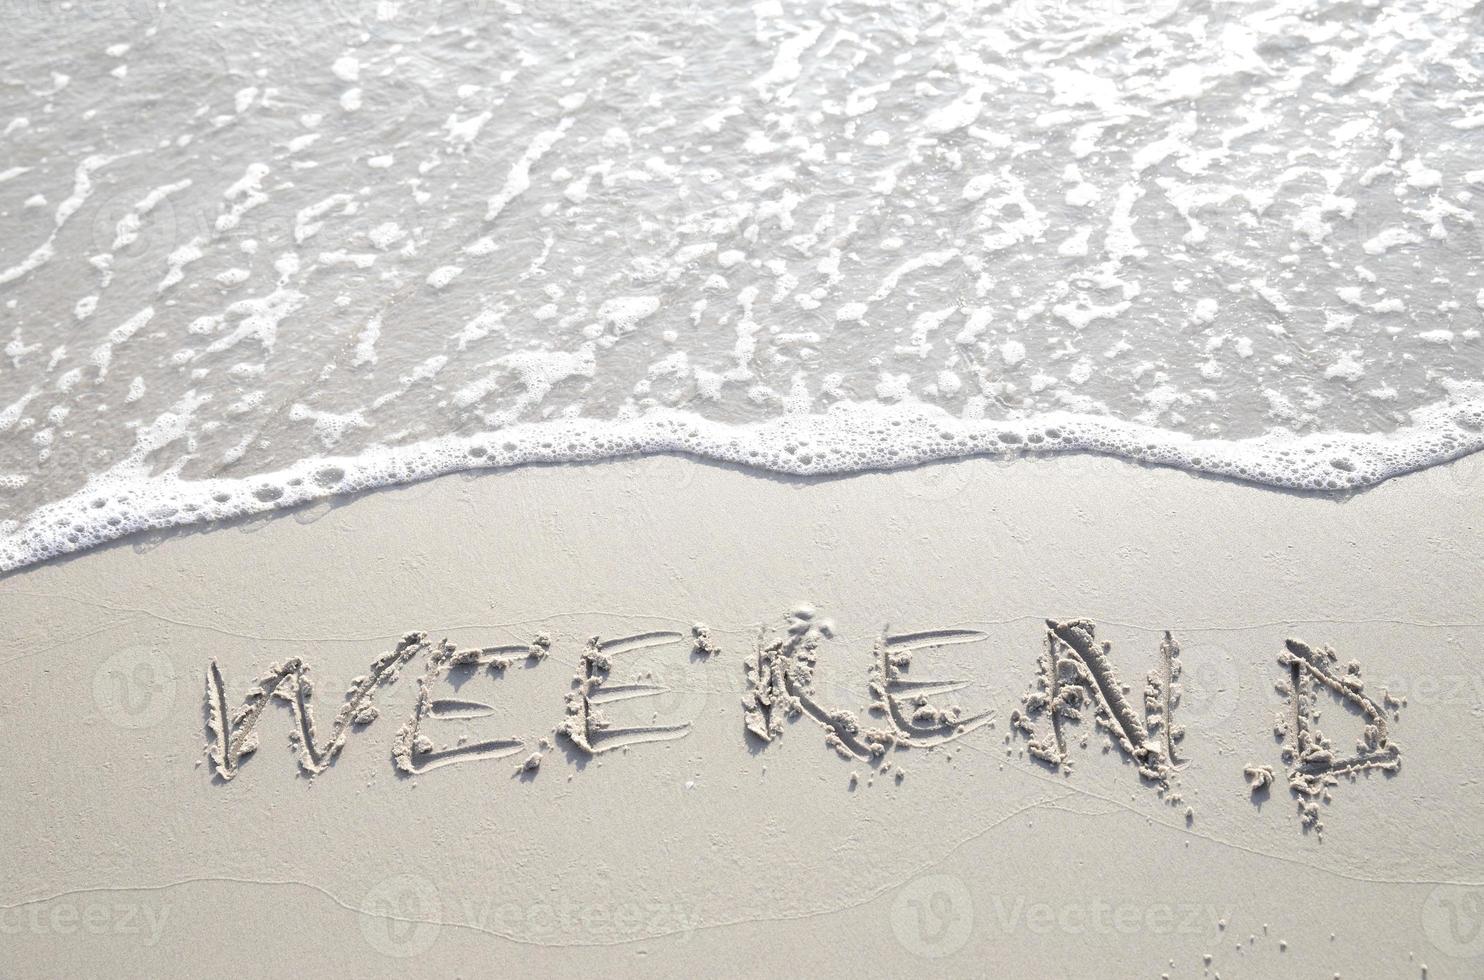 palabra fin de semana escrita a mano en la arena. cierra la textura de la arena en la playa en verano. vacaciones, concepto de vacaciones, foto